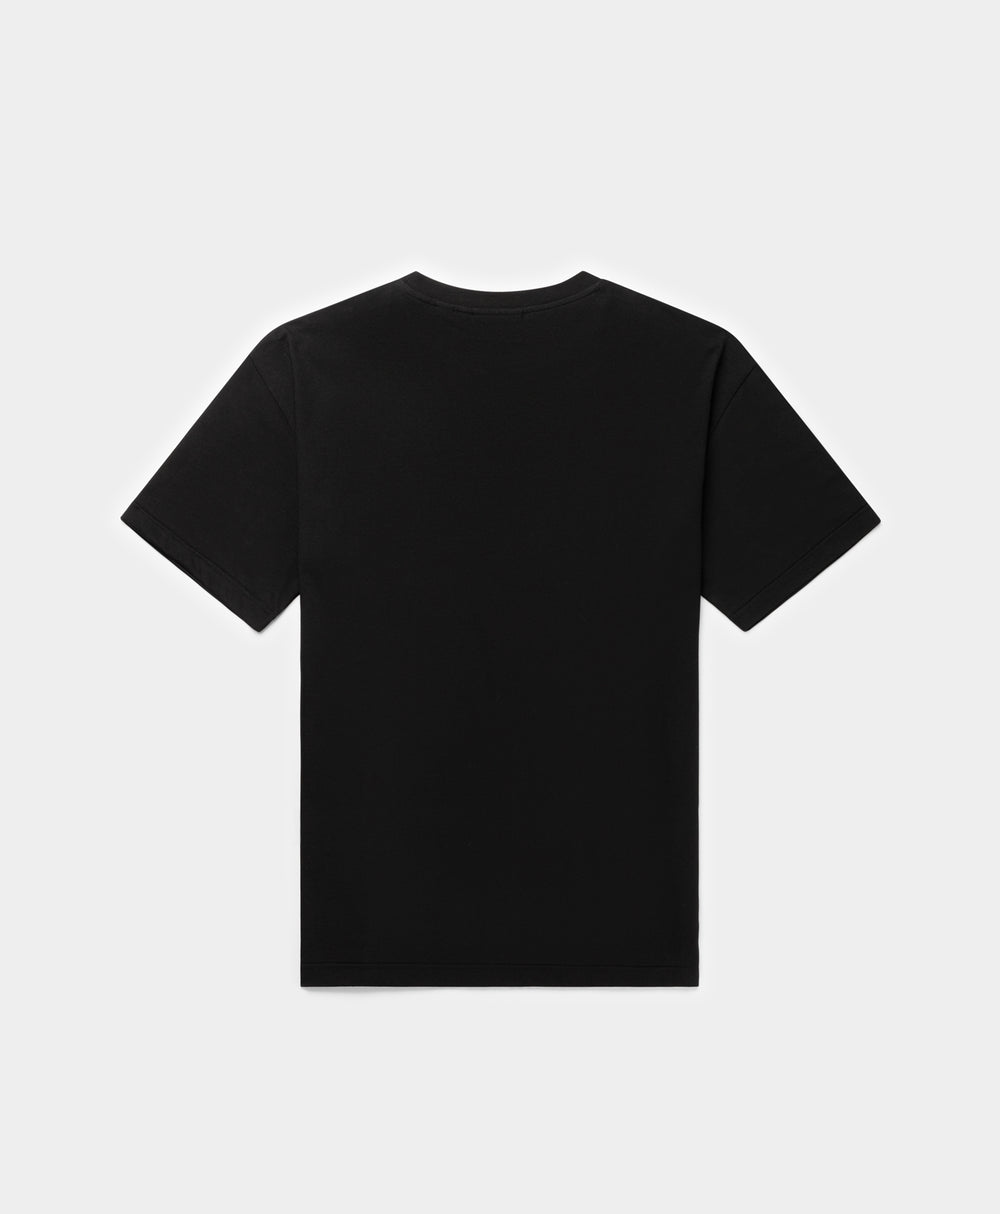 DP - Black Omar T-Shirt - Packshot - Rear